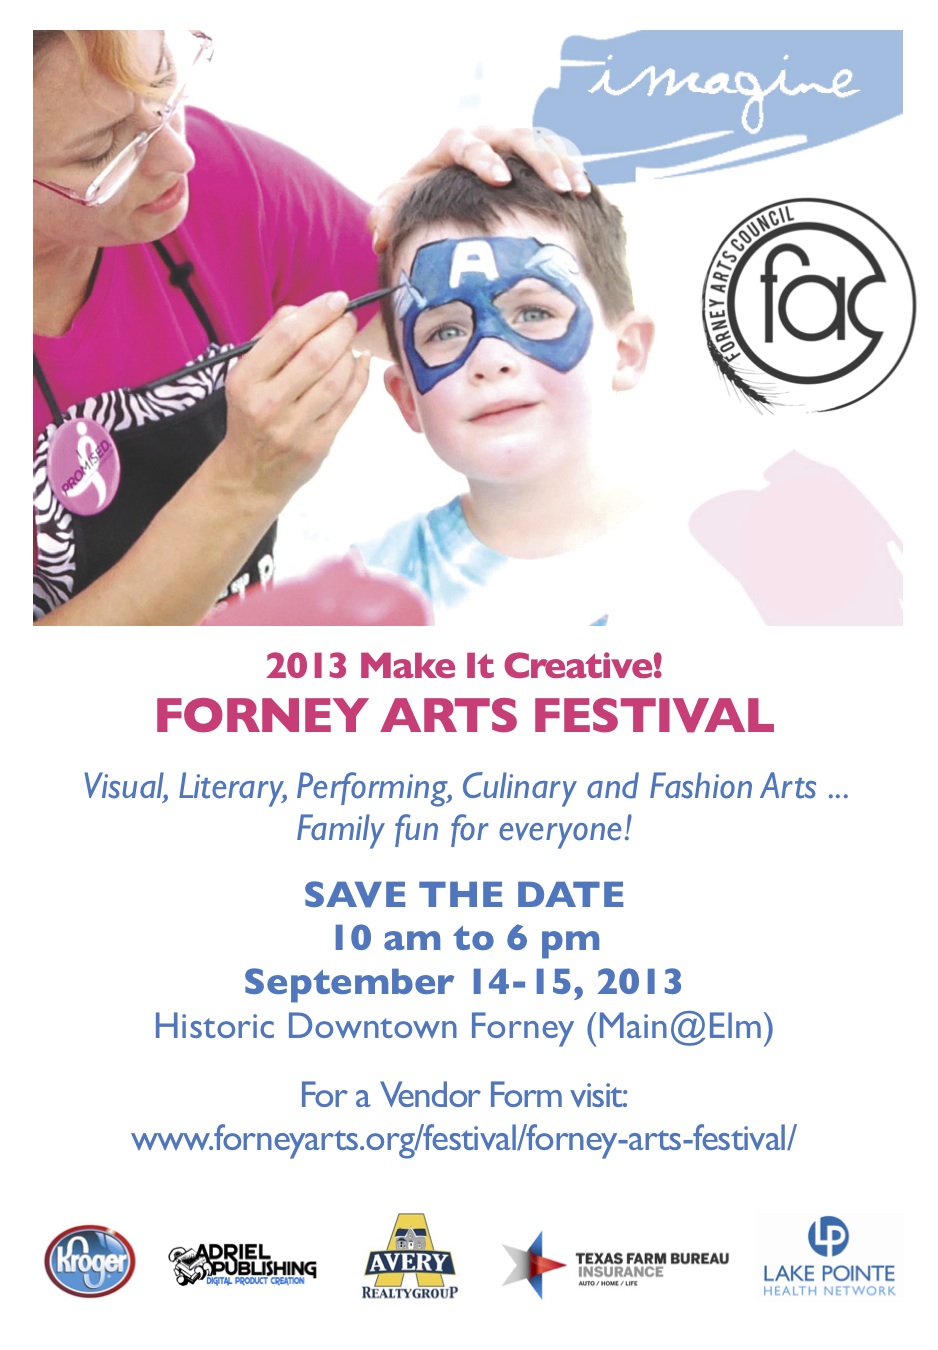 Forney Arts Festival Sept 14-15